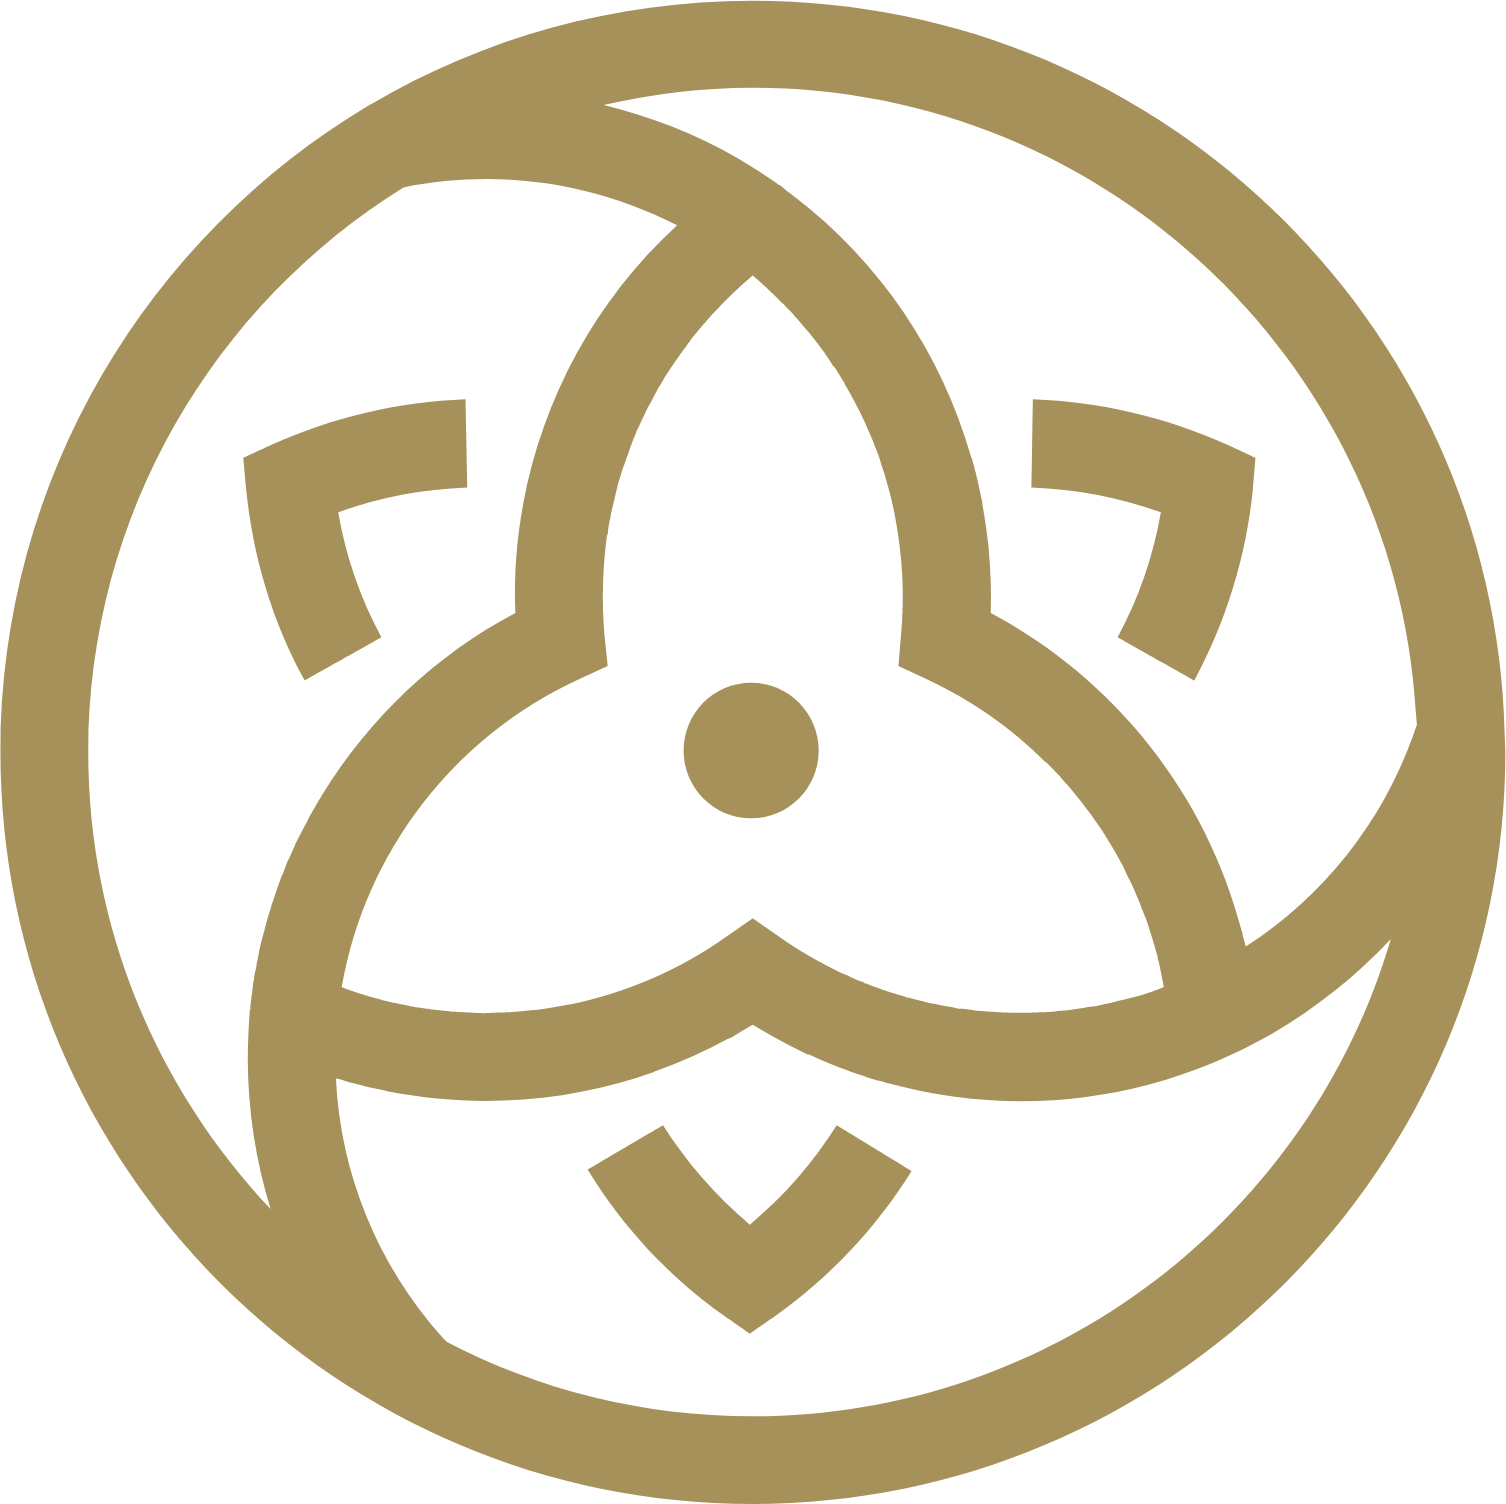 Trillium Gold Mines logo (PNG transparent)